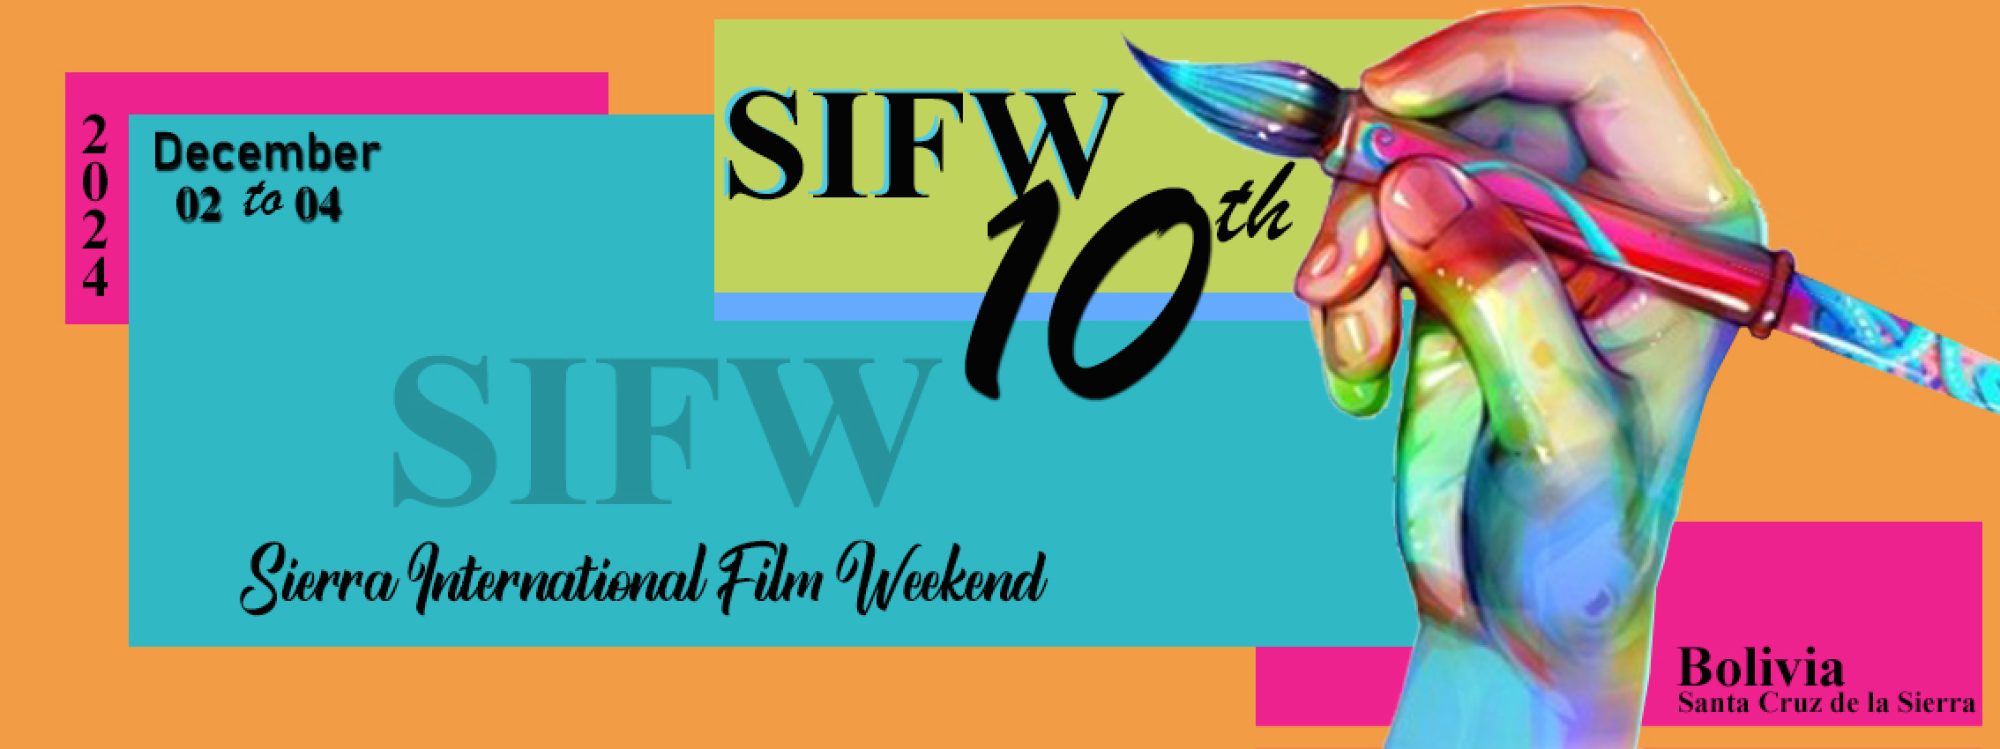 Sierra International Film Weekend  